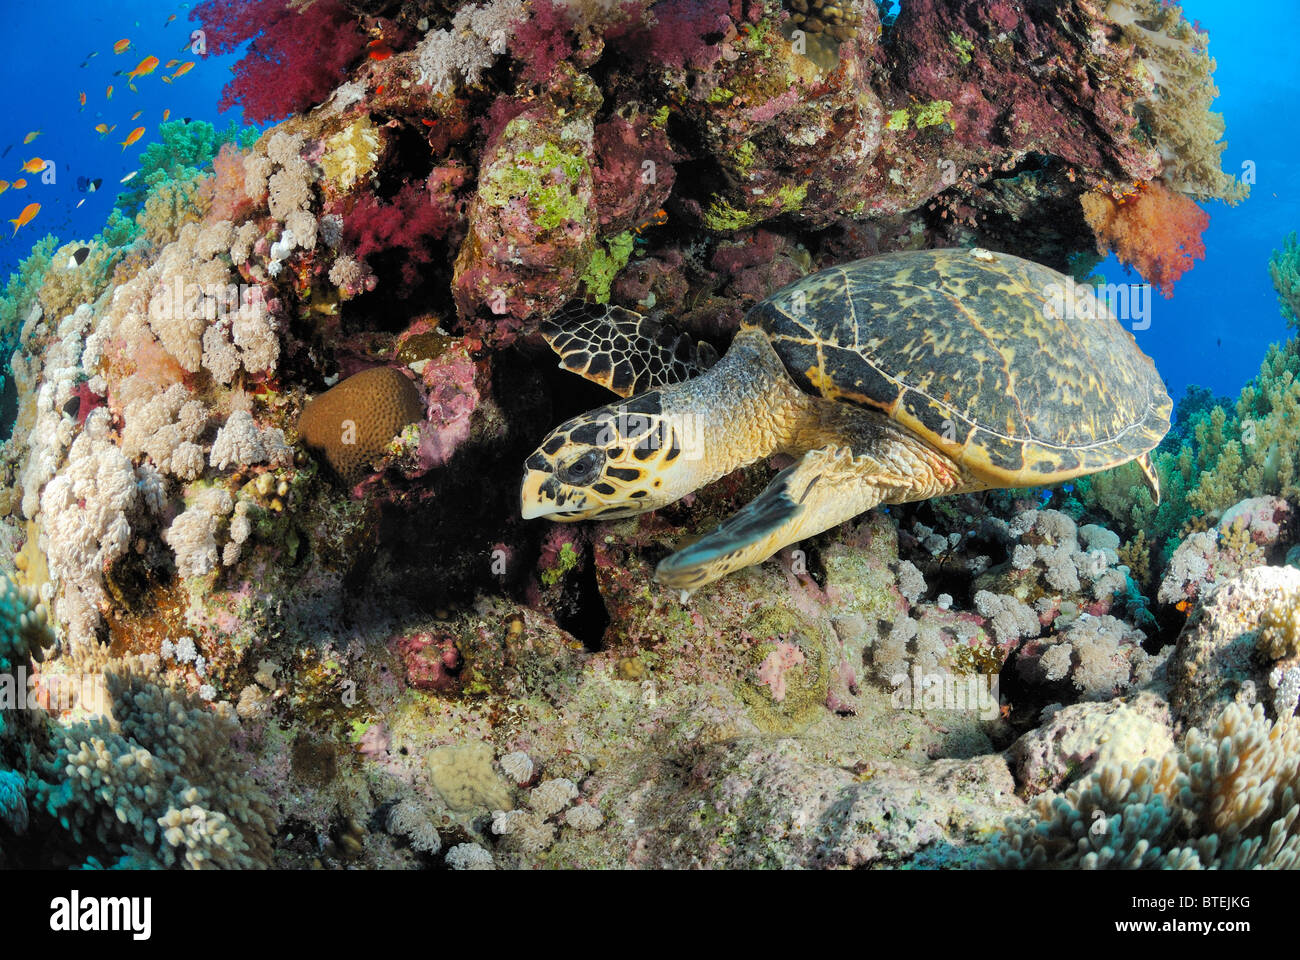 Loggerhead turtle off Hamata coast, Egypt, Red Sea Stock Photo